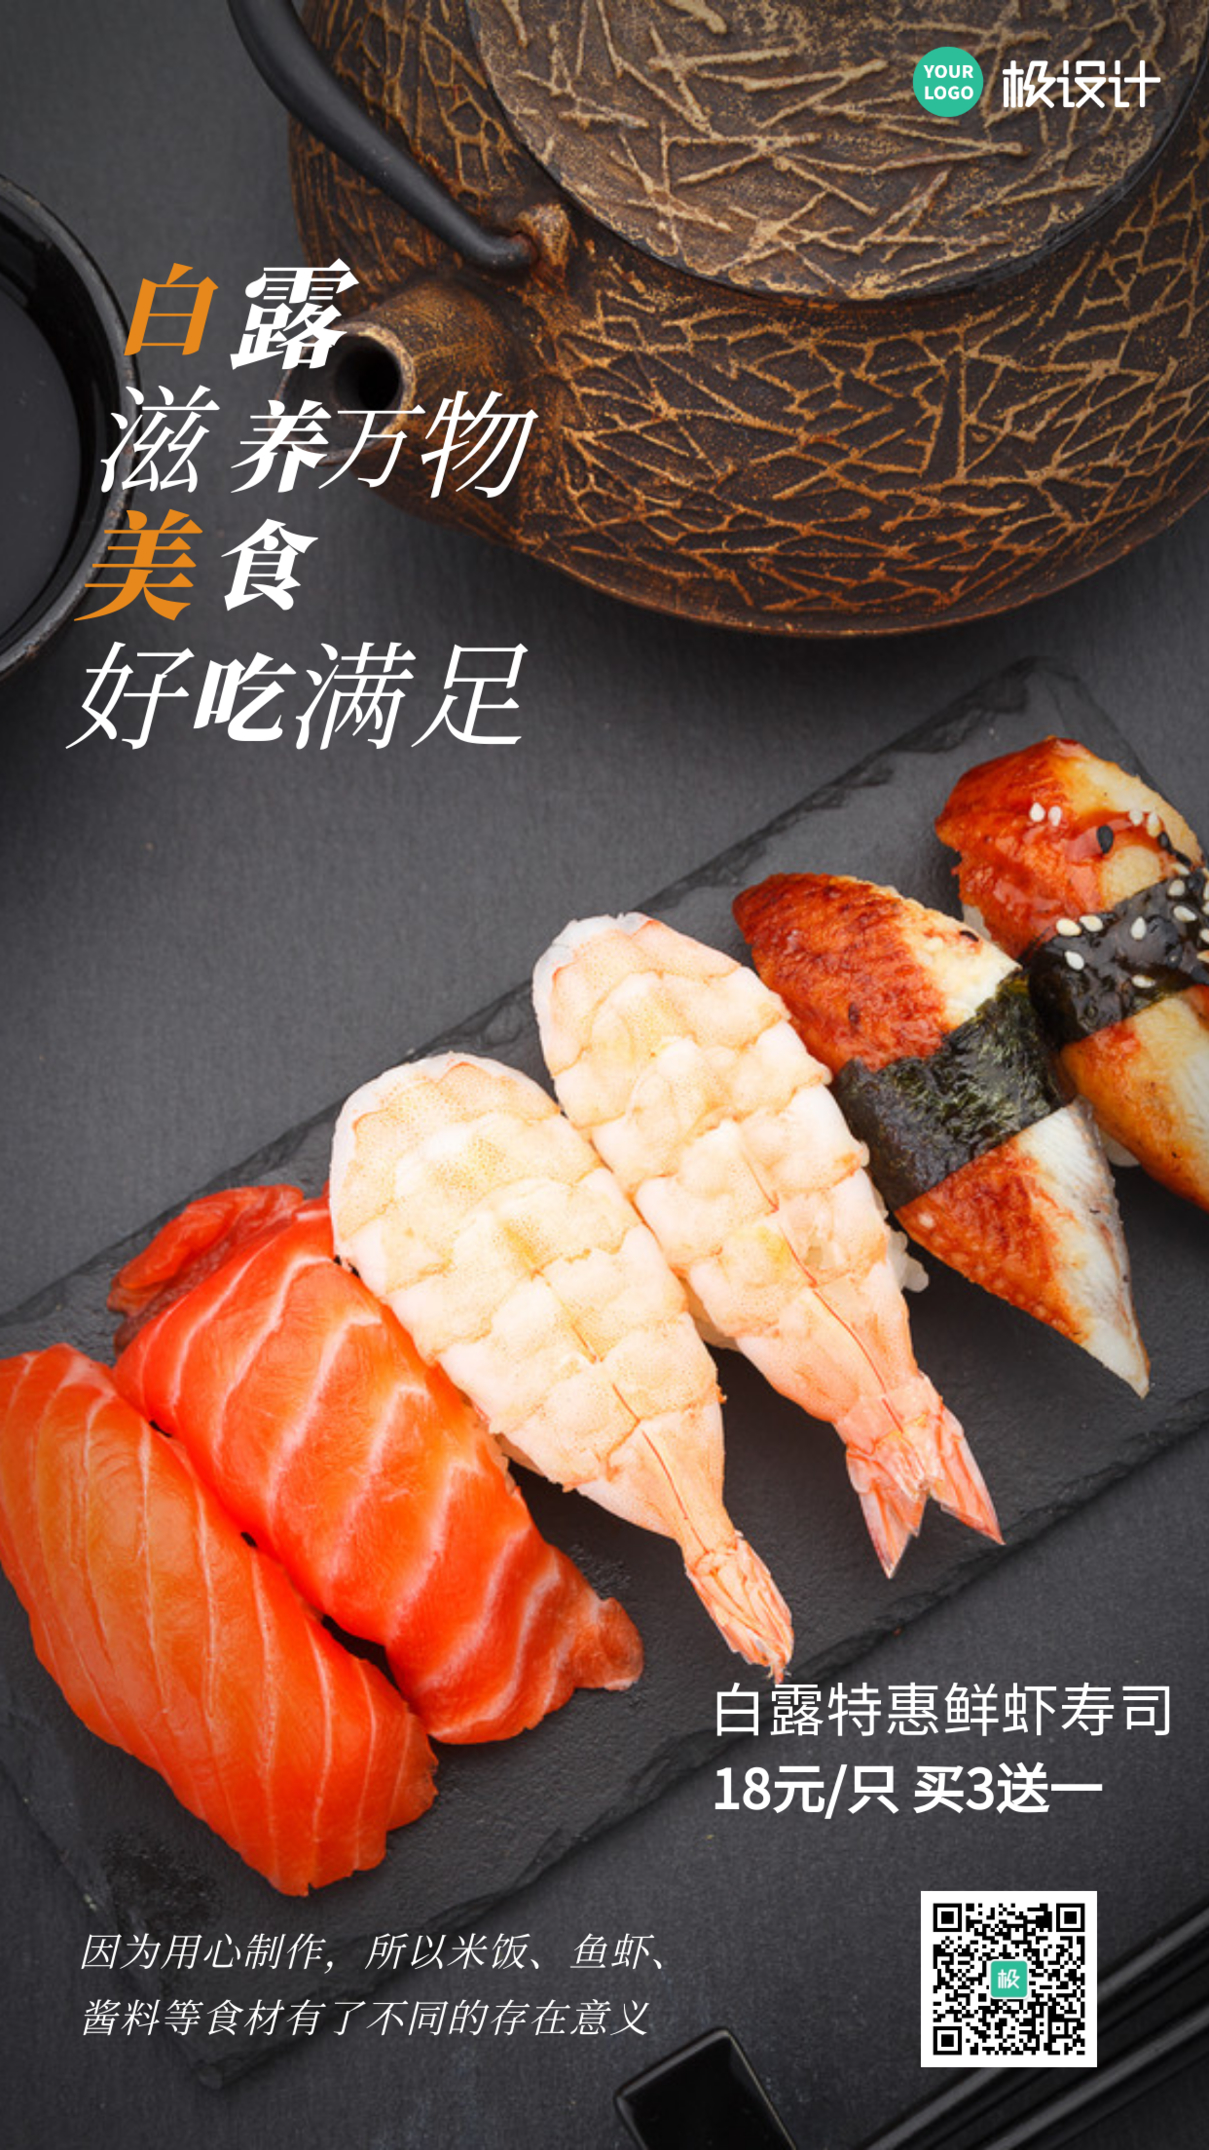 白露时节美食寿司促销手机海报